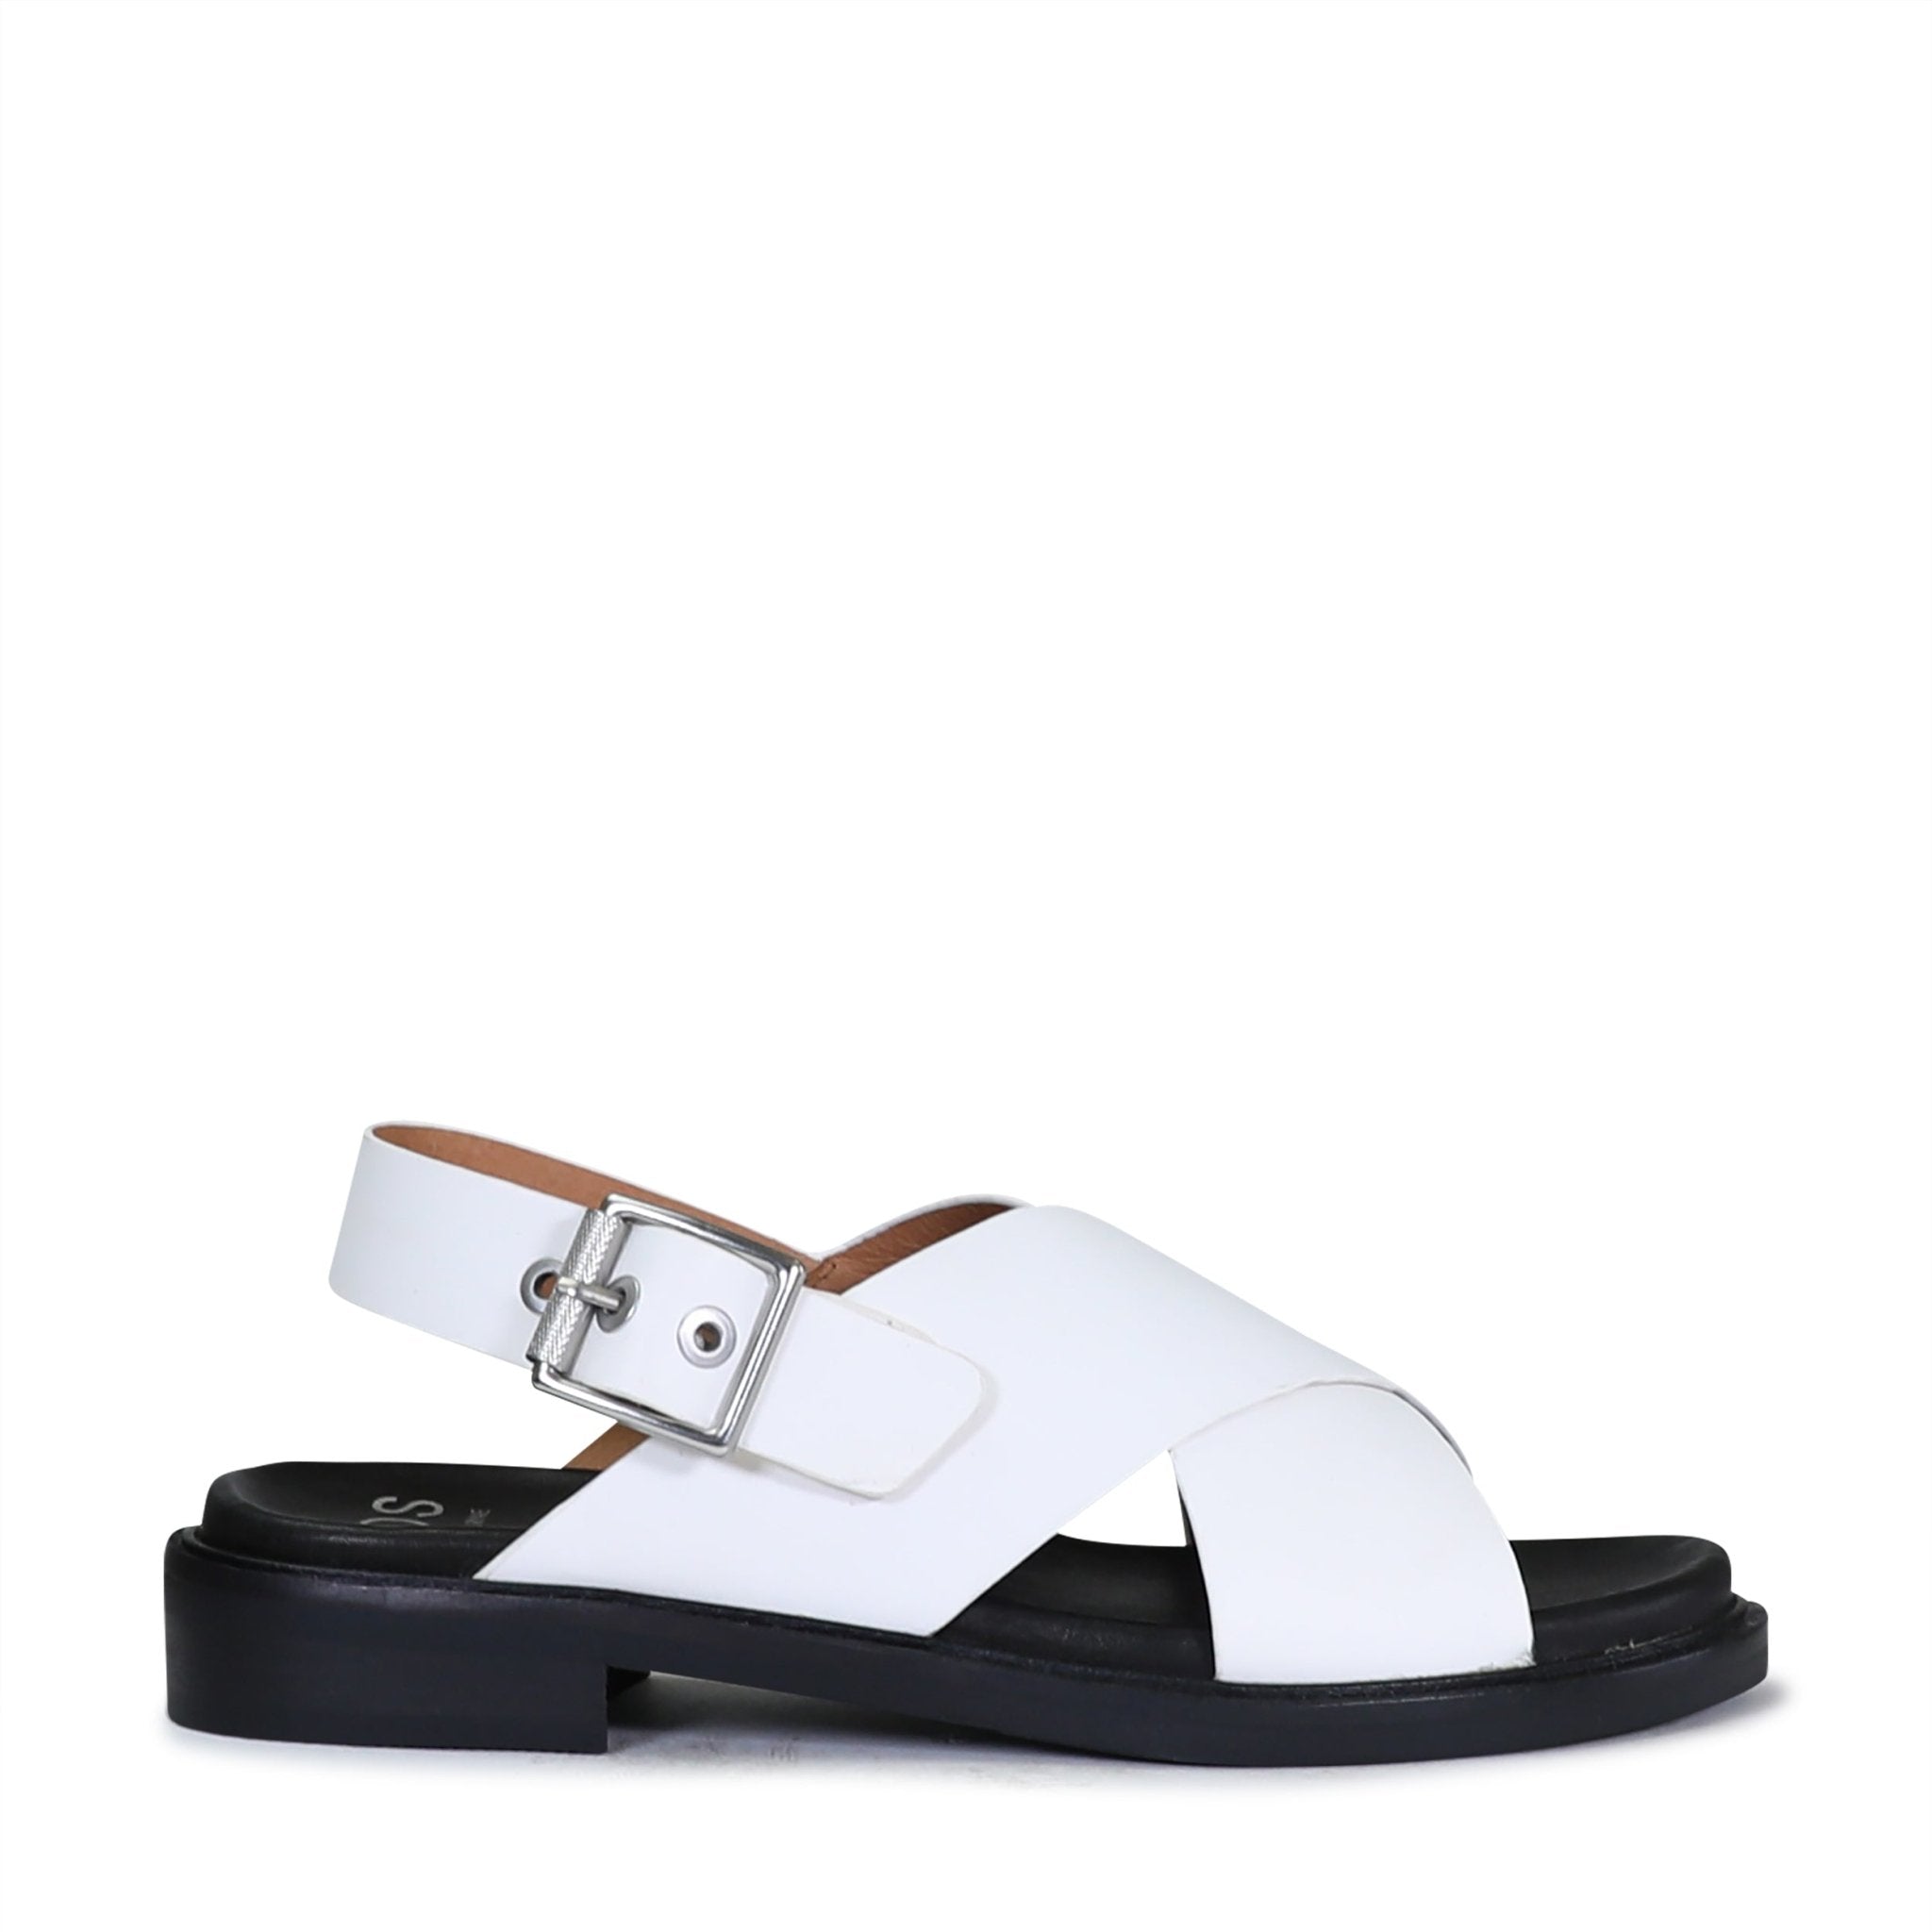 GRUNGE - EOS Footwear - Sling Back Sandals #color_white